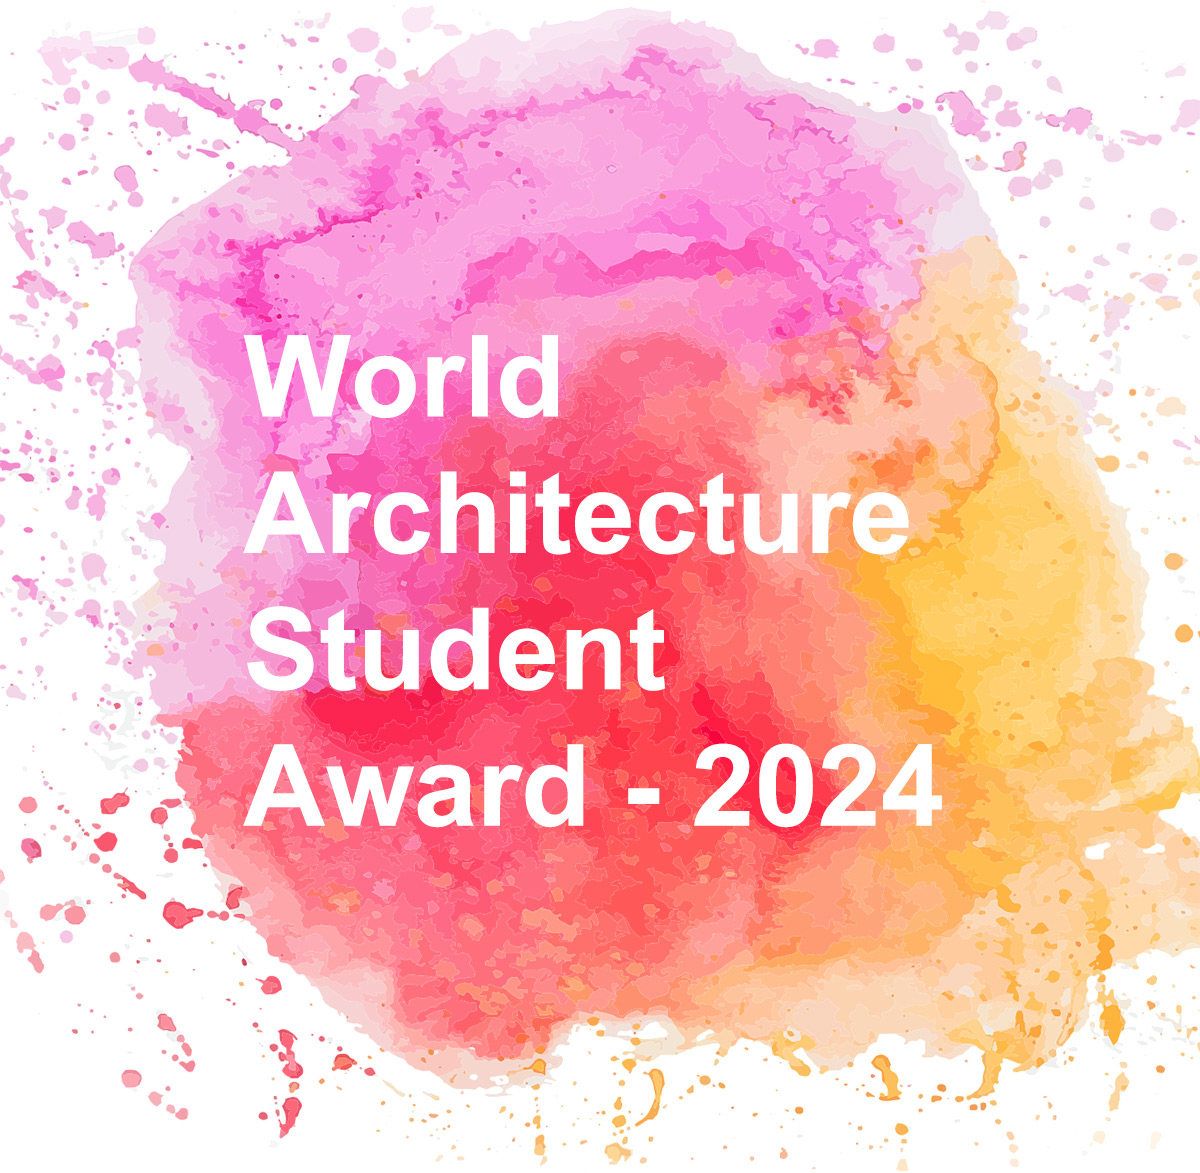 WASA 世界建筑学生奖是世界上最大的建筑学生竞赛